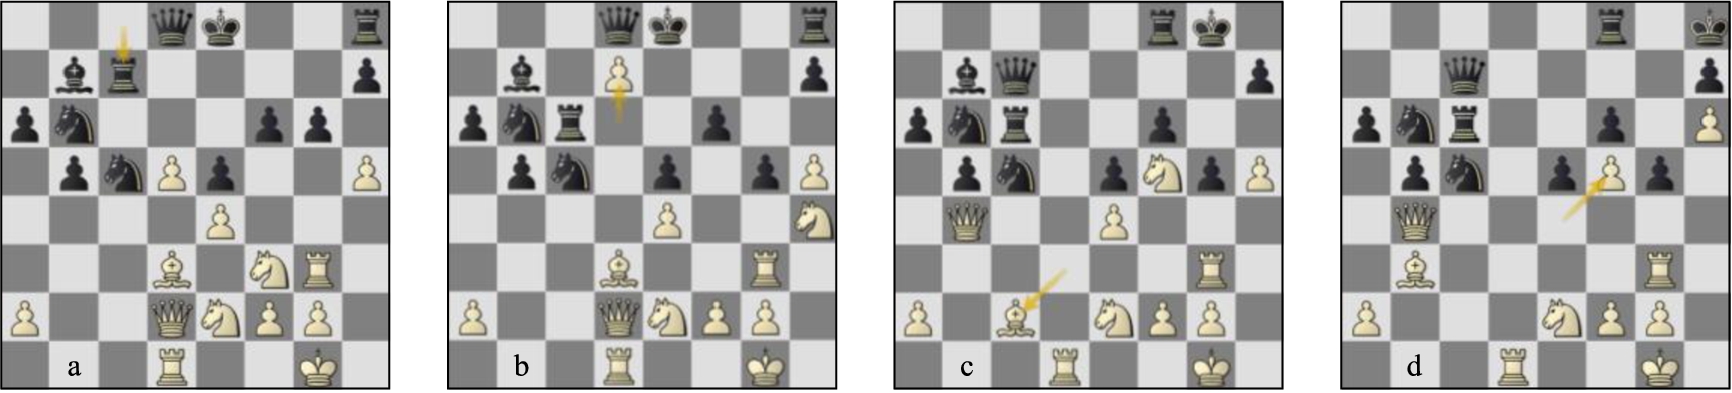 Game 78 St-Lc (a) p25w, (b) p27b, (c) p30b, (d) p33b.